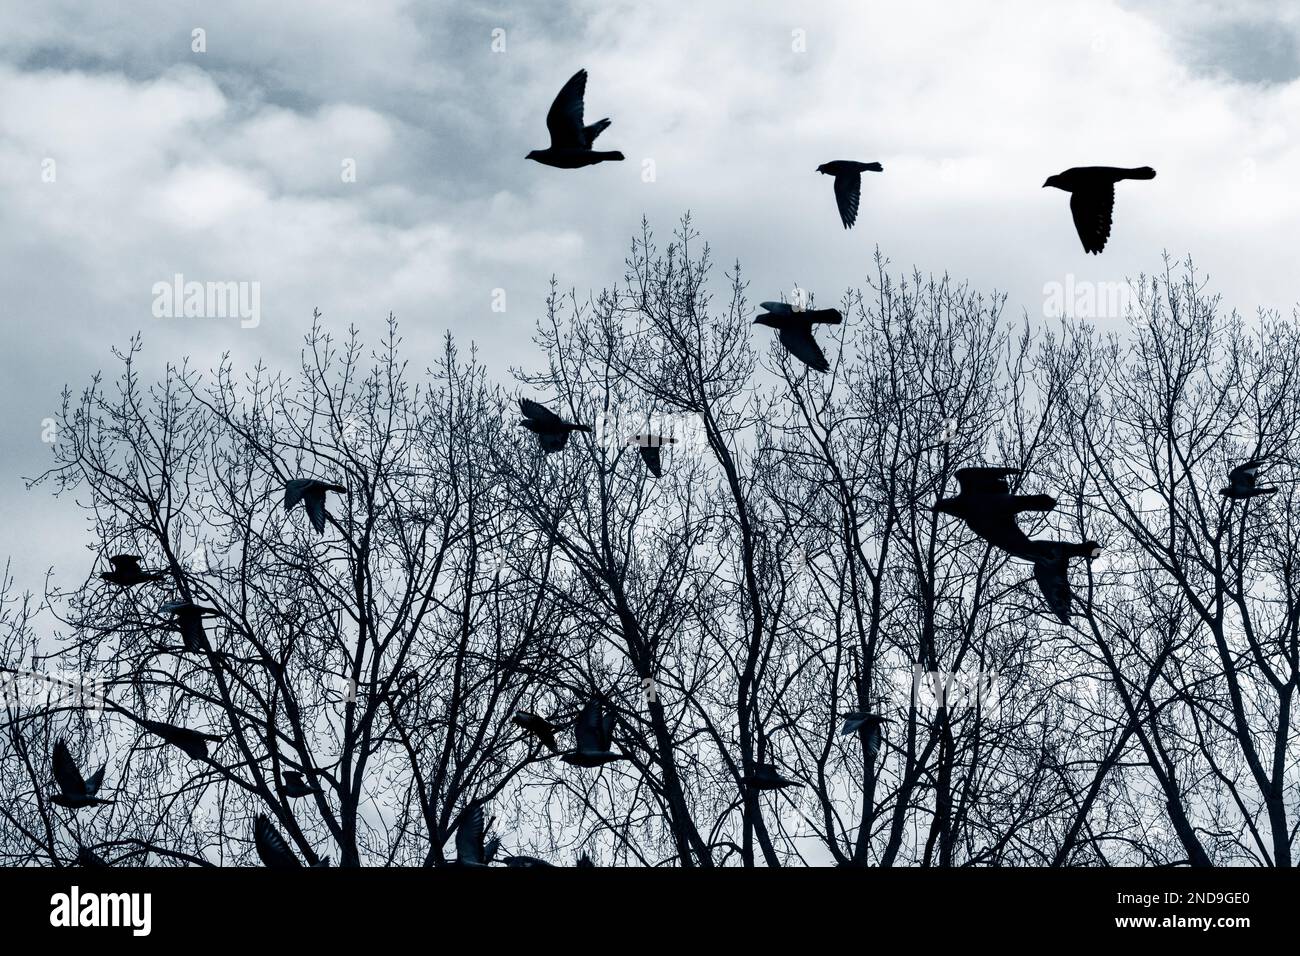 La silueta de los pájaros volando sobre los árboles sin hojas en el invierno. Foto de stock